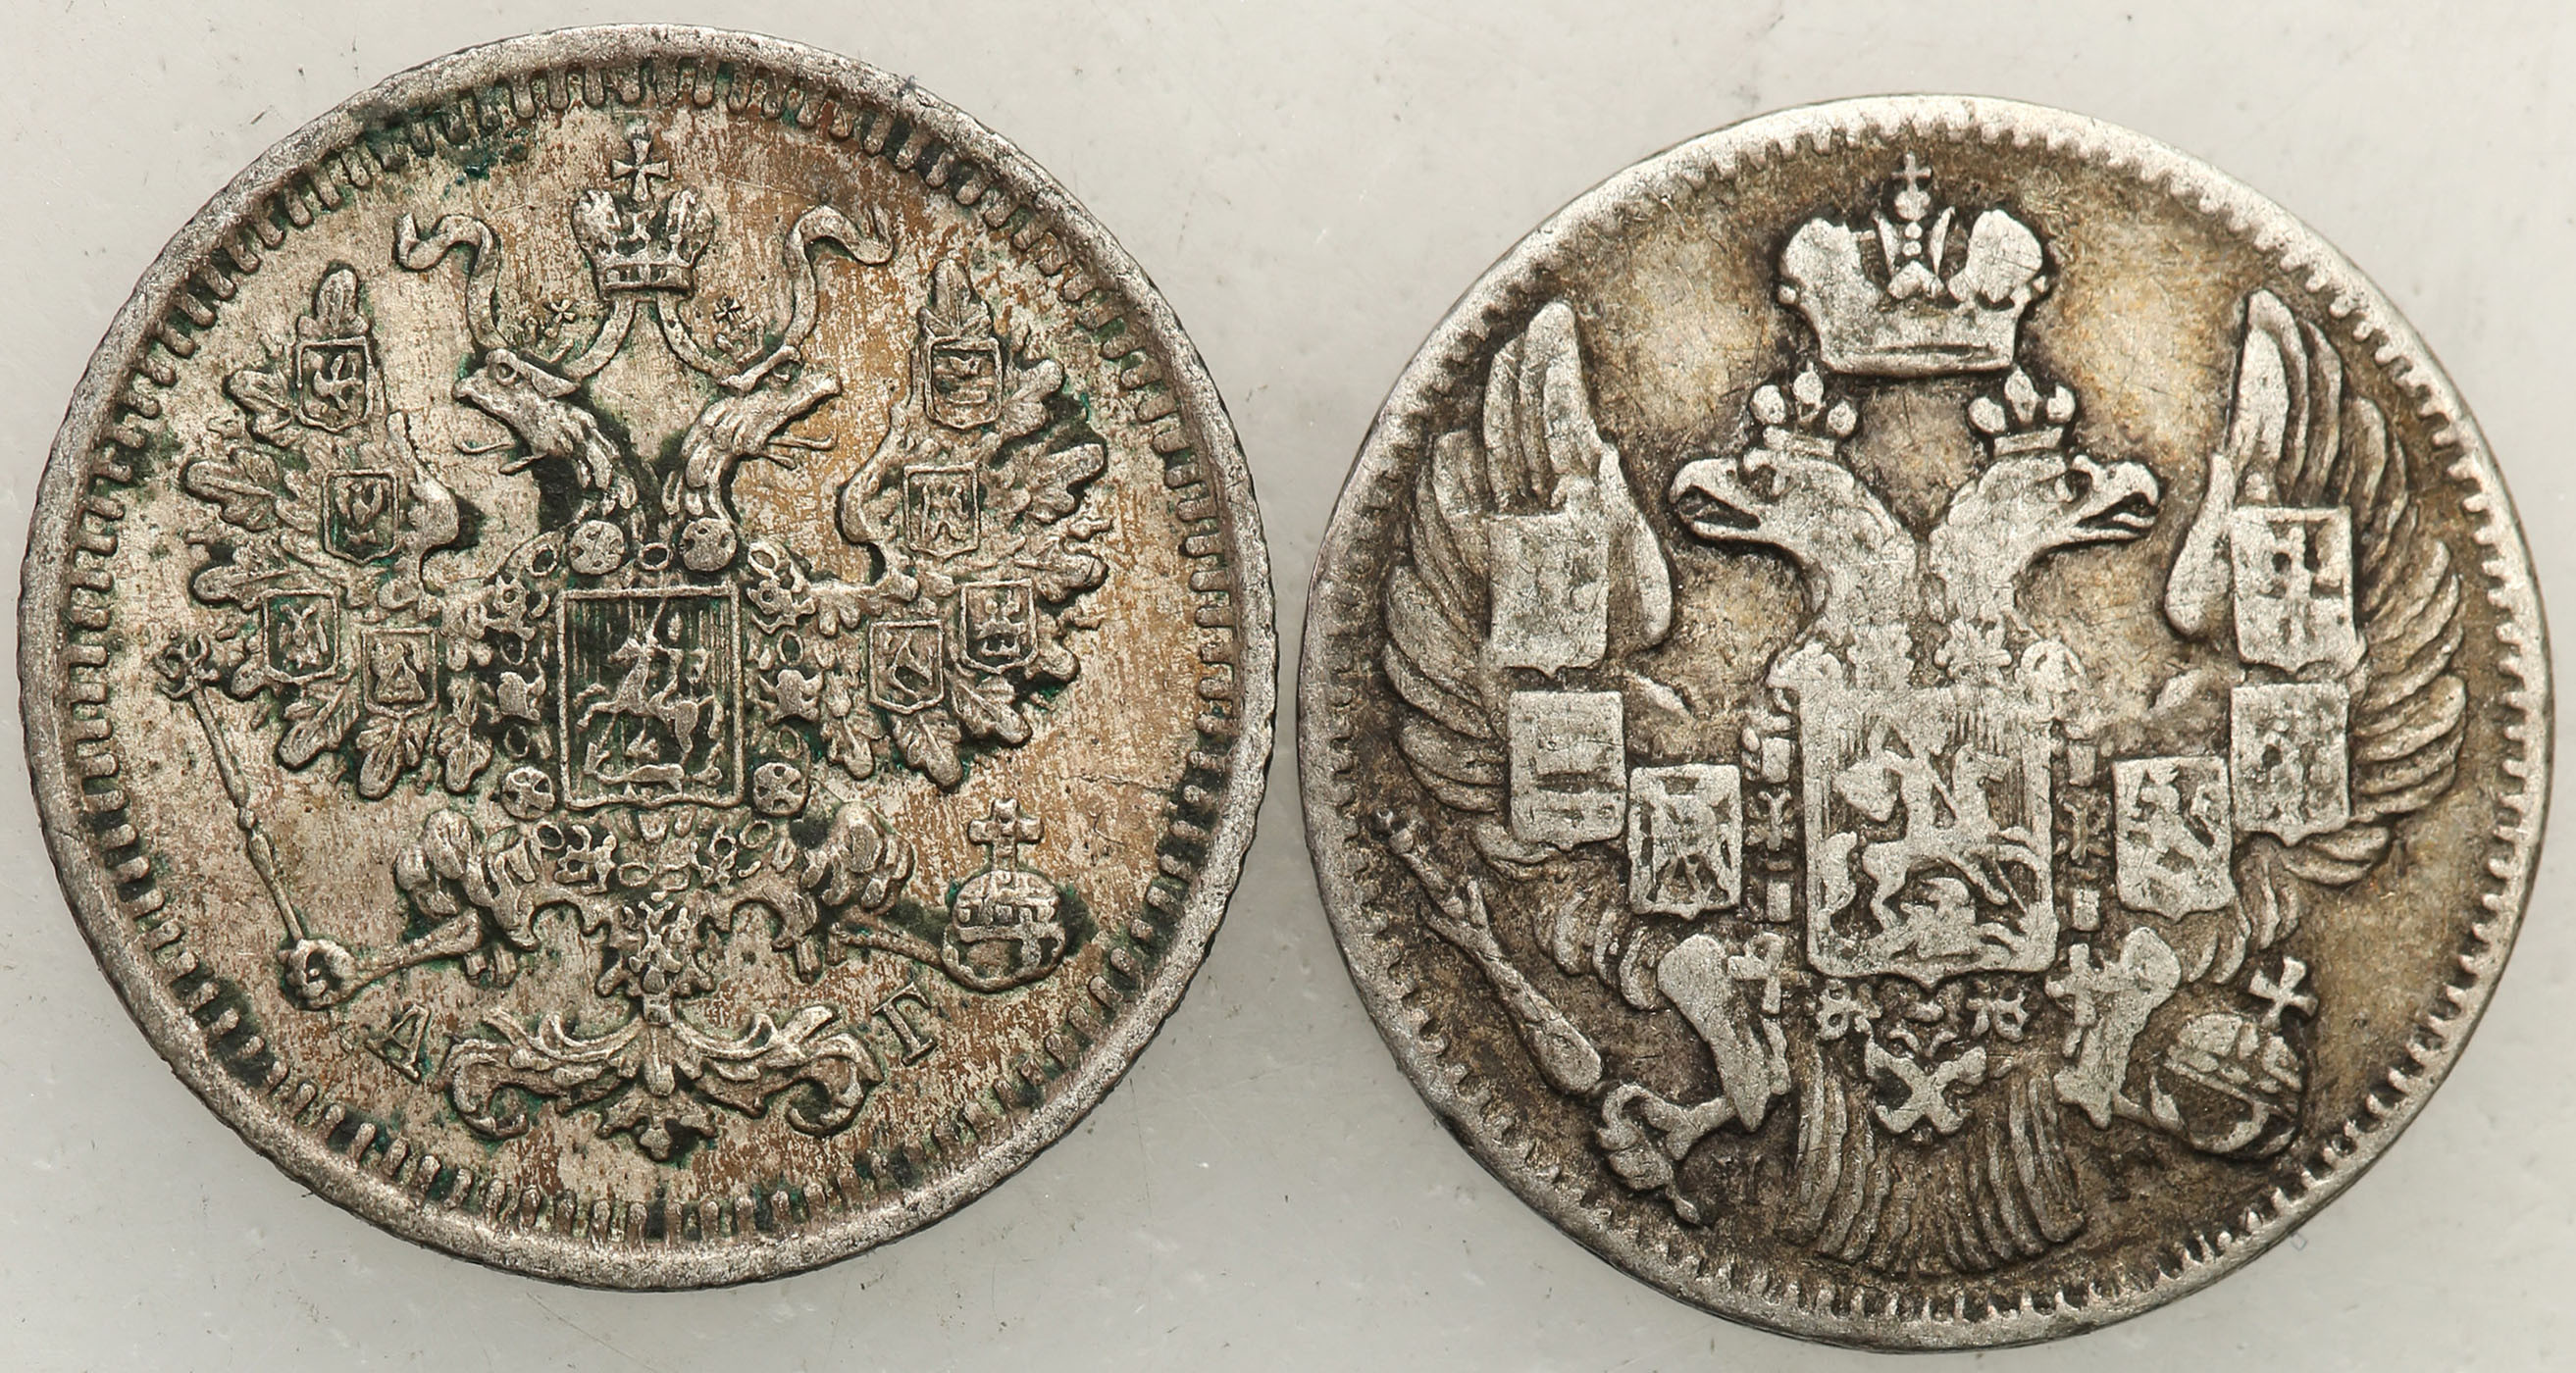 Rosja, Mikołaj I, Aleksander III. 5 kopiejek 1834 i 1888 - zestaw 2 monet